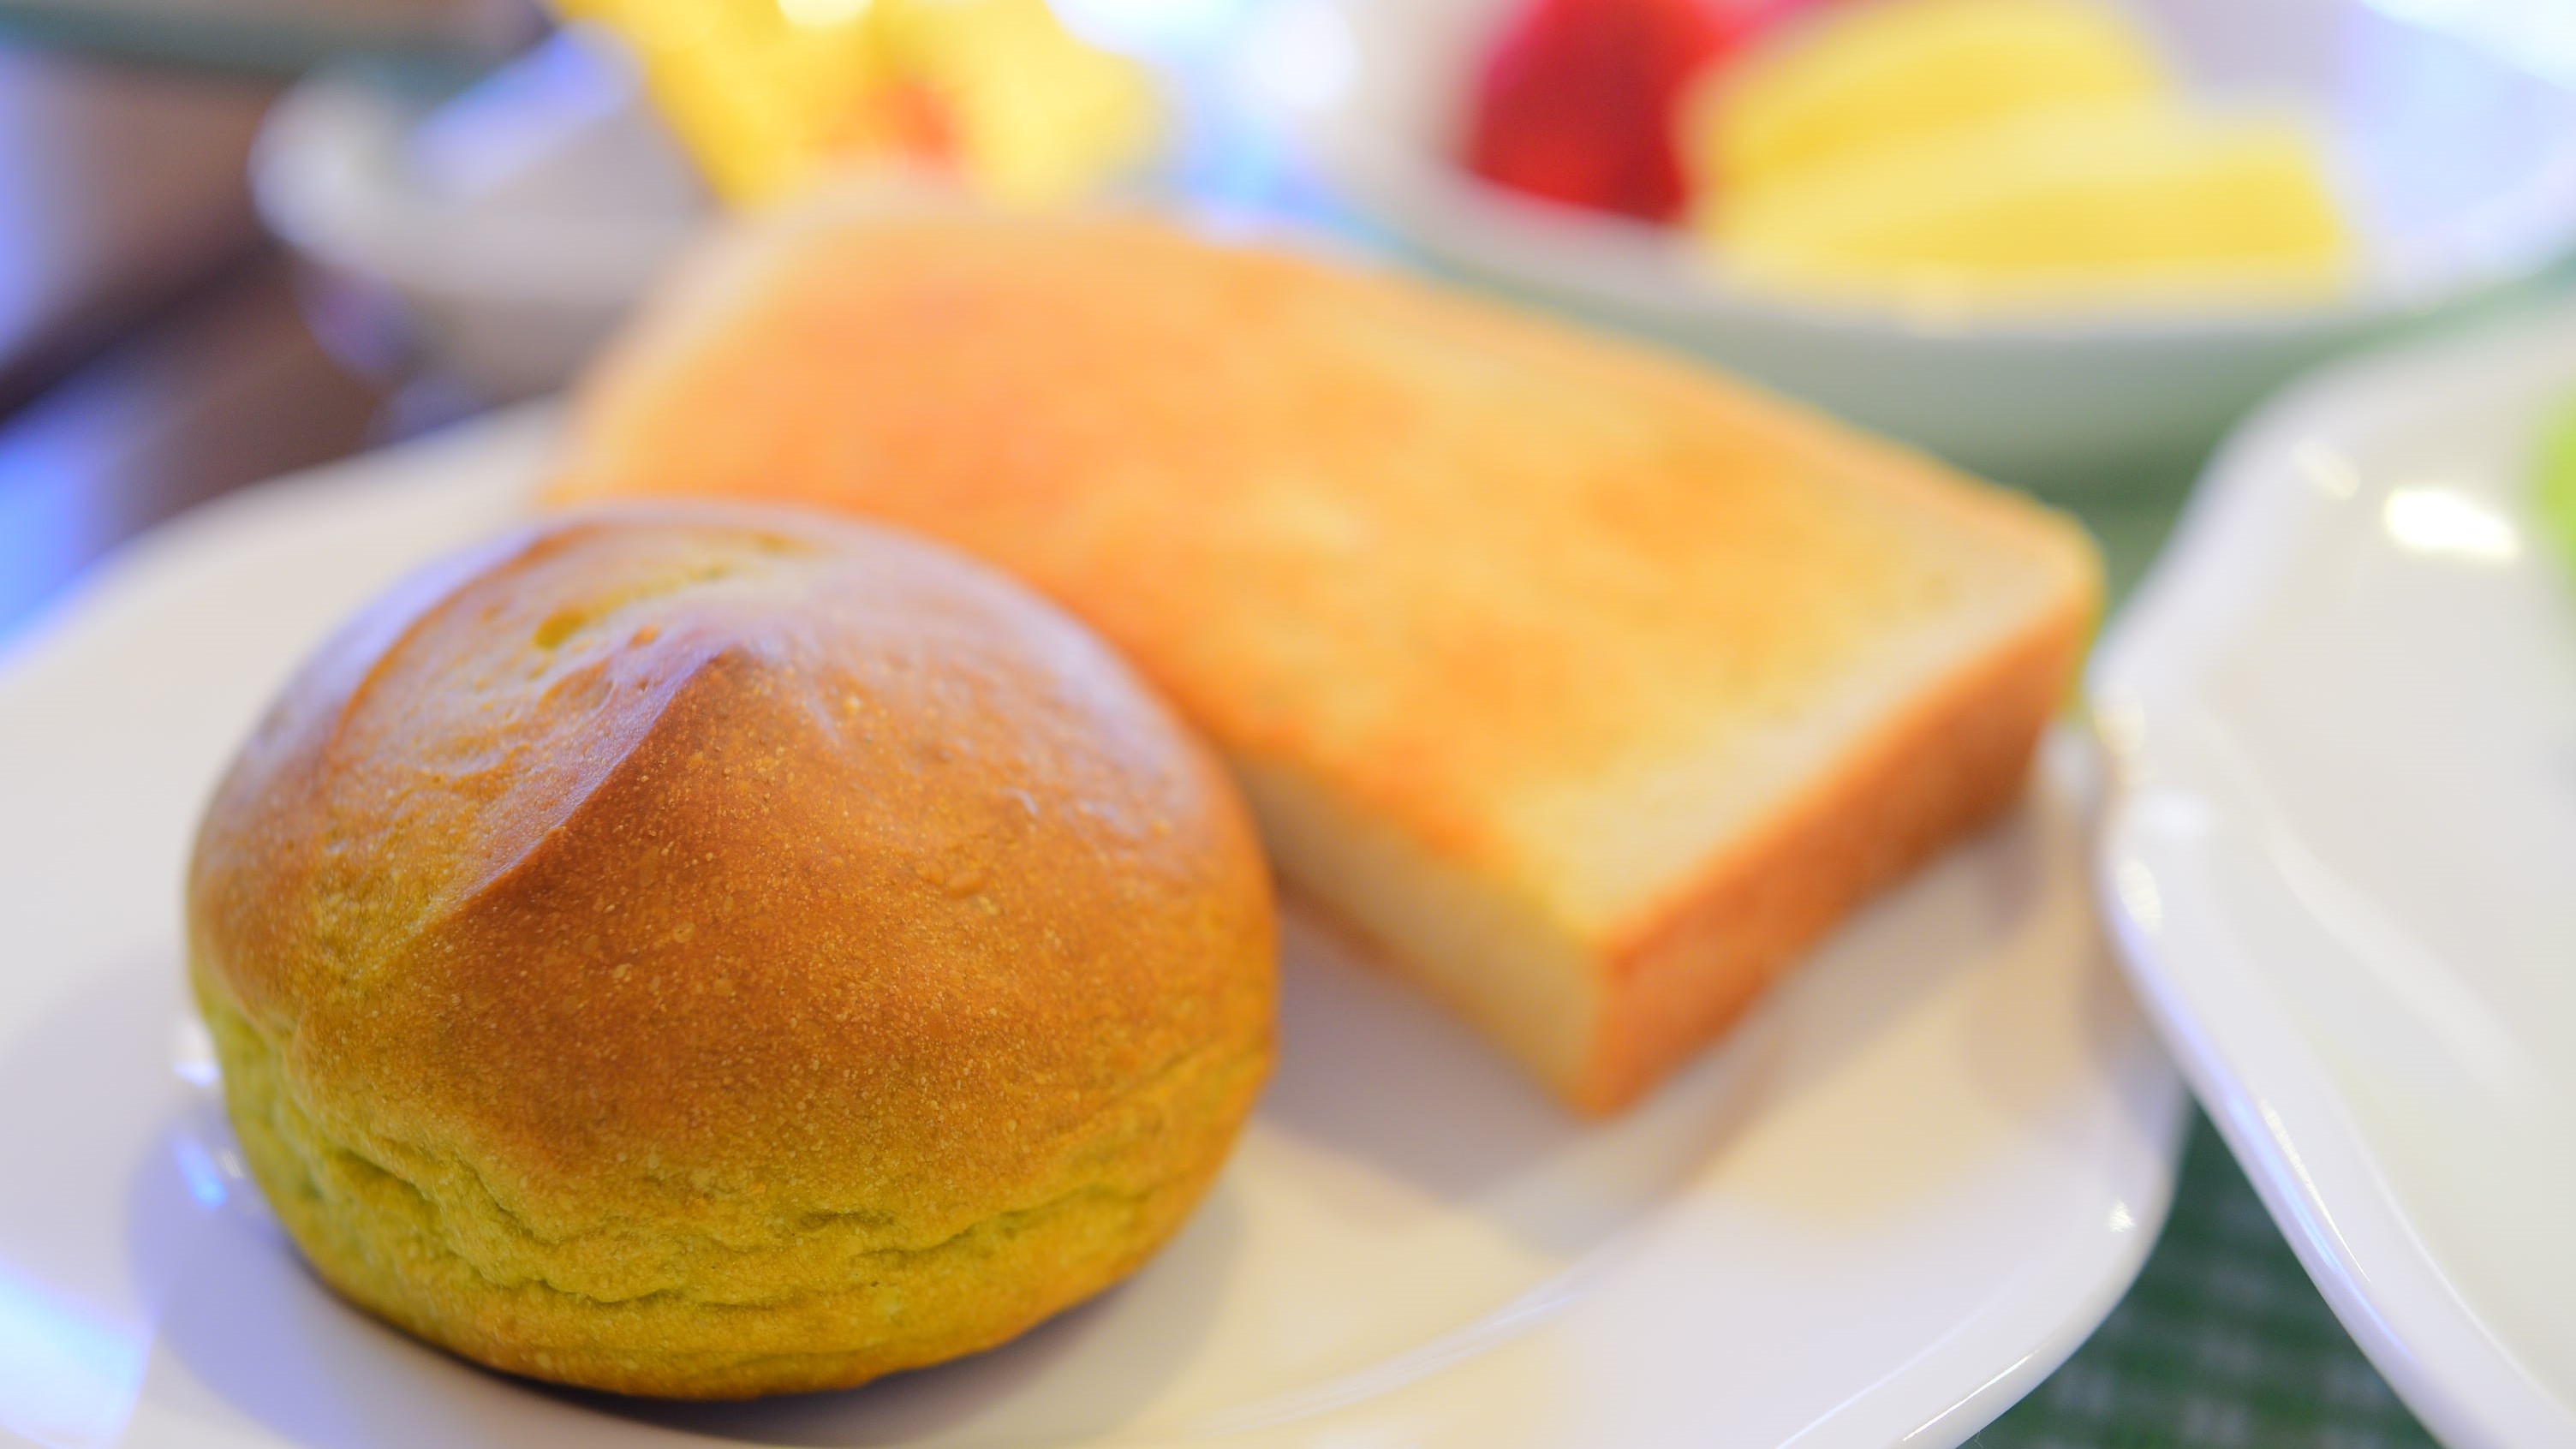 【1人旅 朝食付】自家製パンとたっぷり野菜の優しい朝ごはん♪小鳥のさえずりで目覚める爽やかな一日